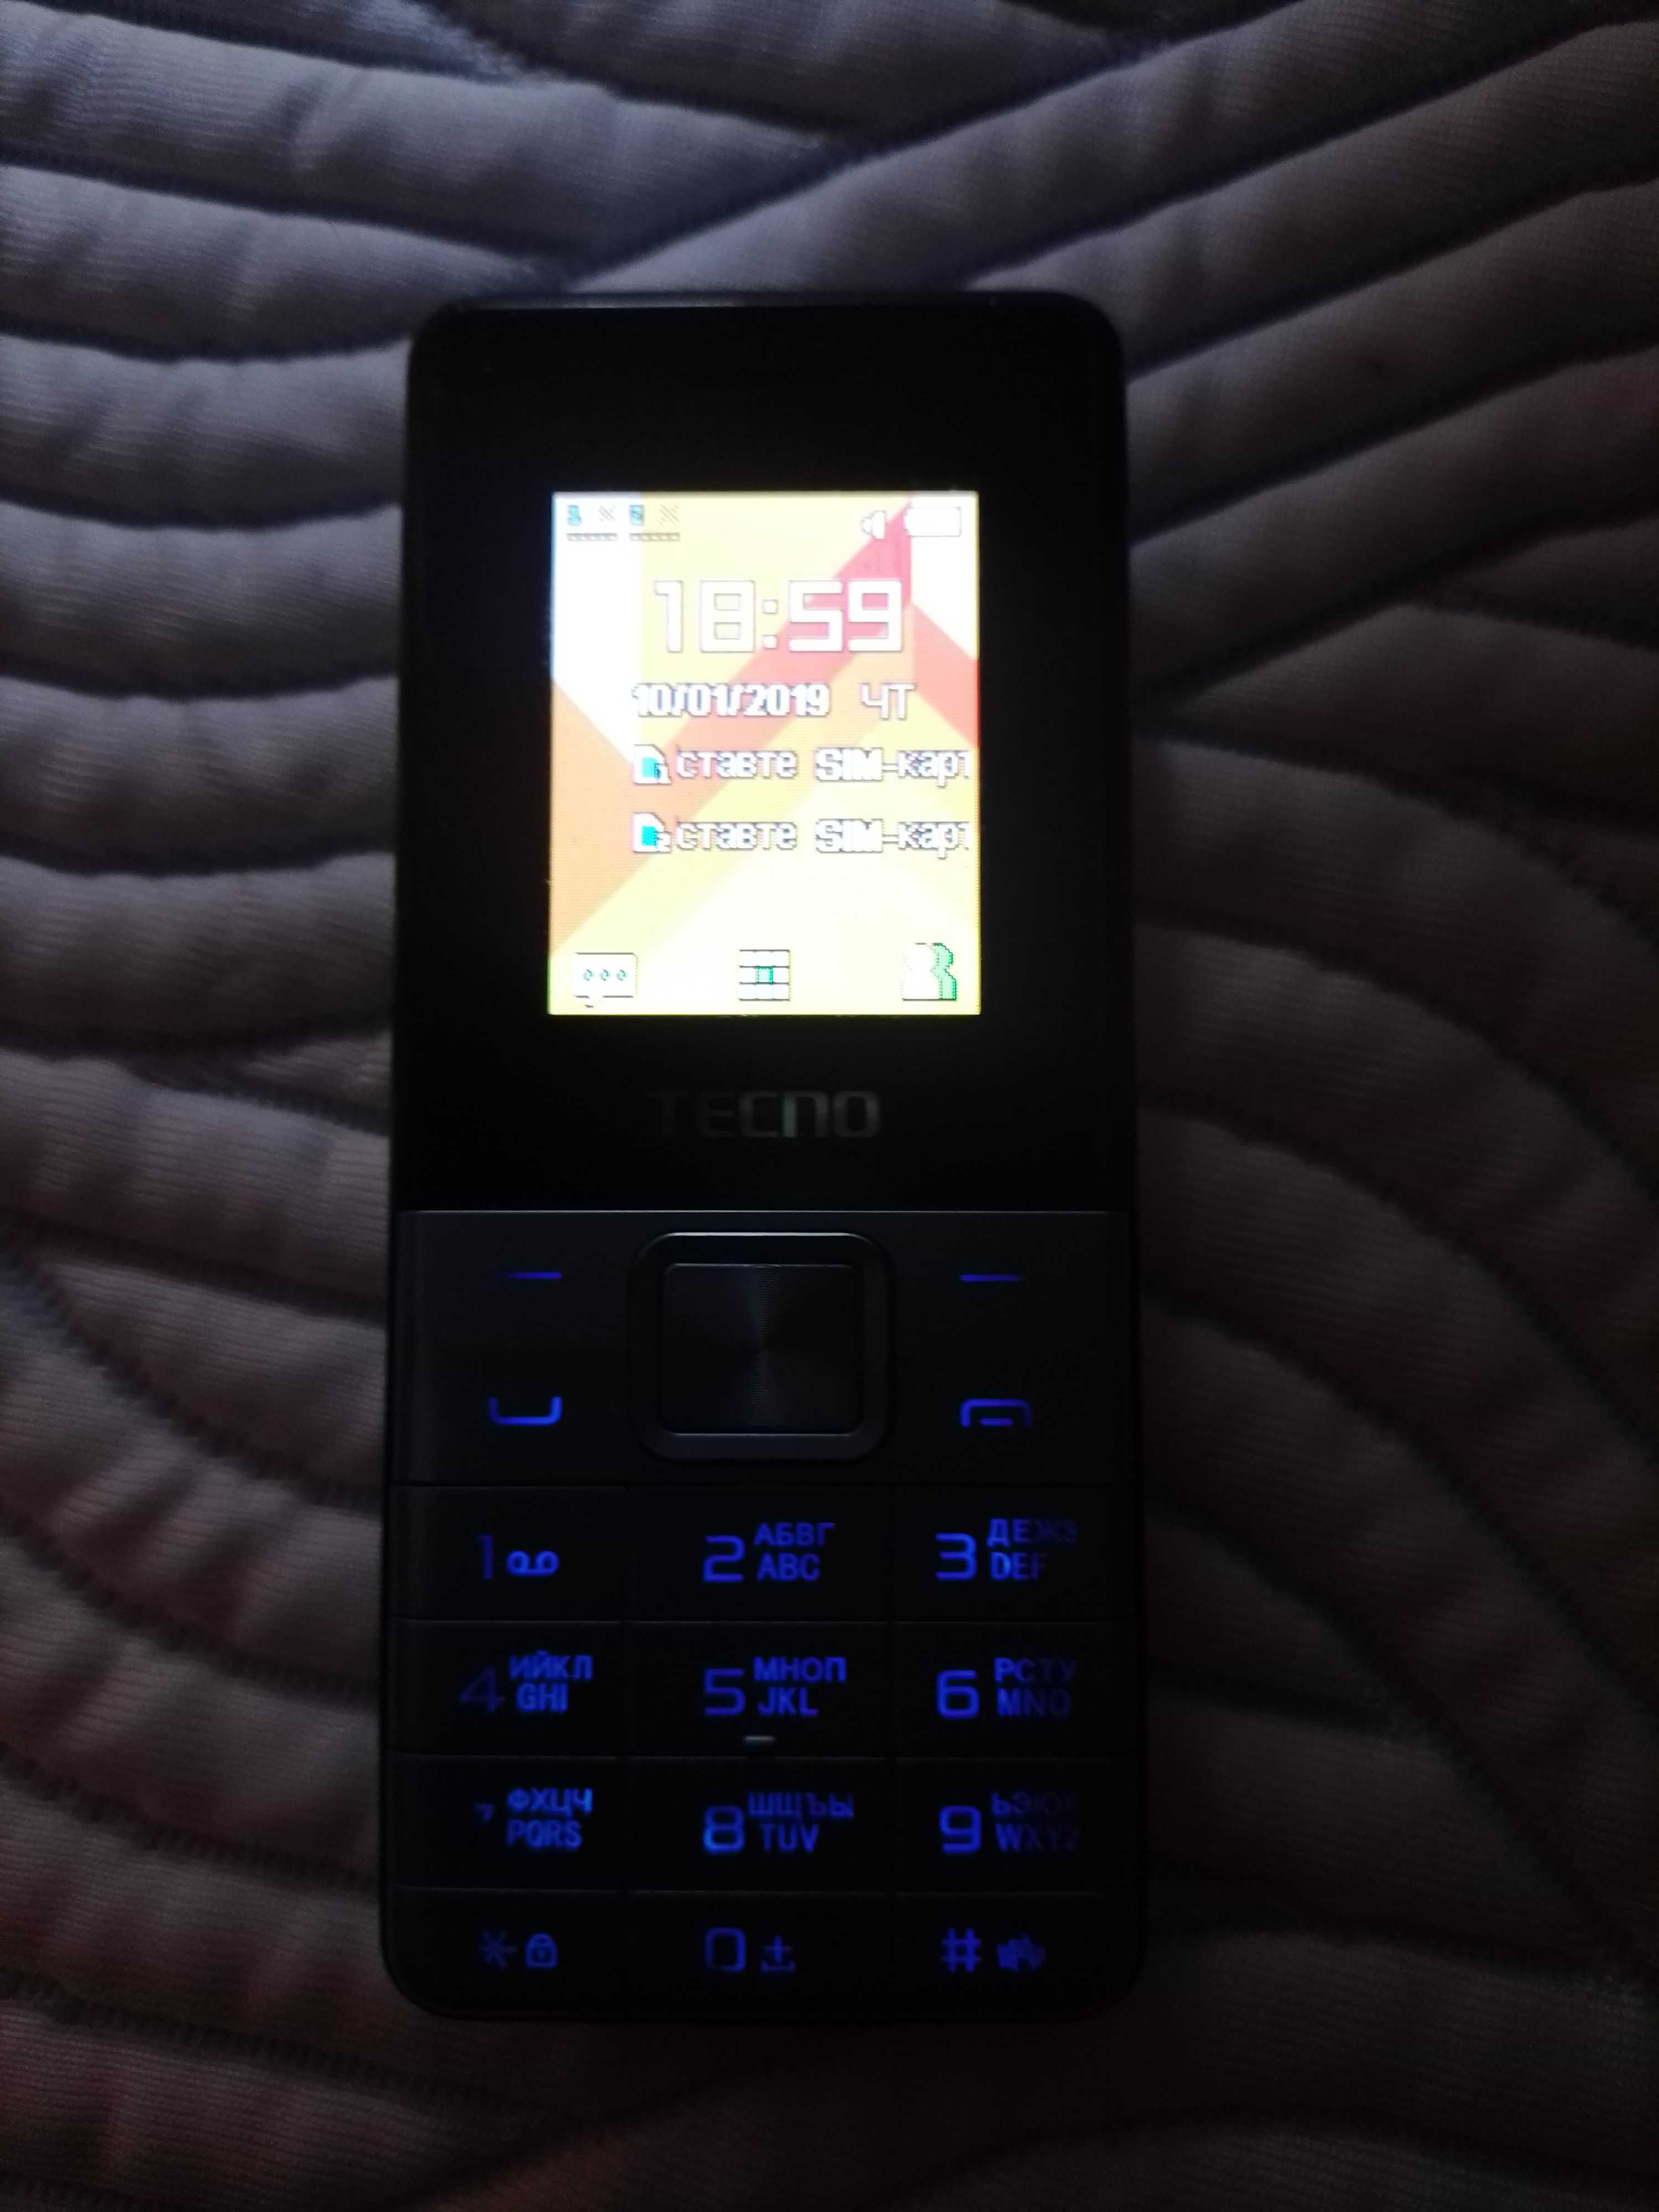 Мобільний телефон TECNO T301 Dual Sim Light Blue